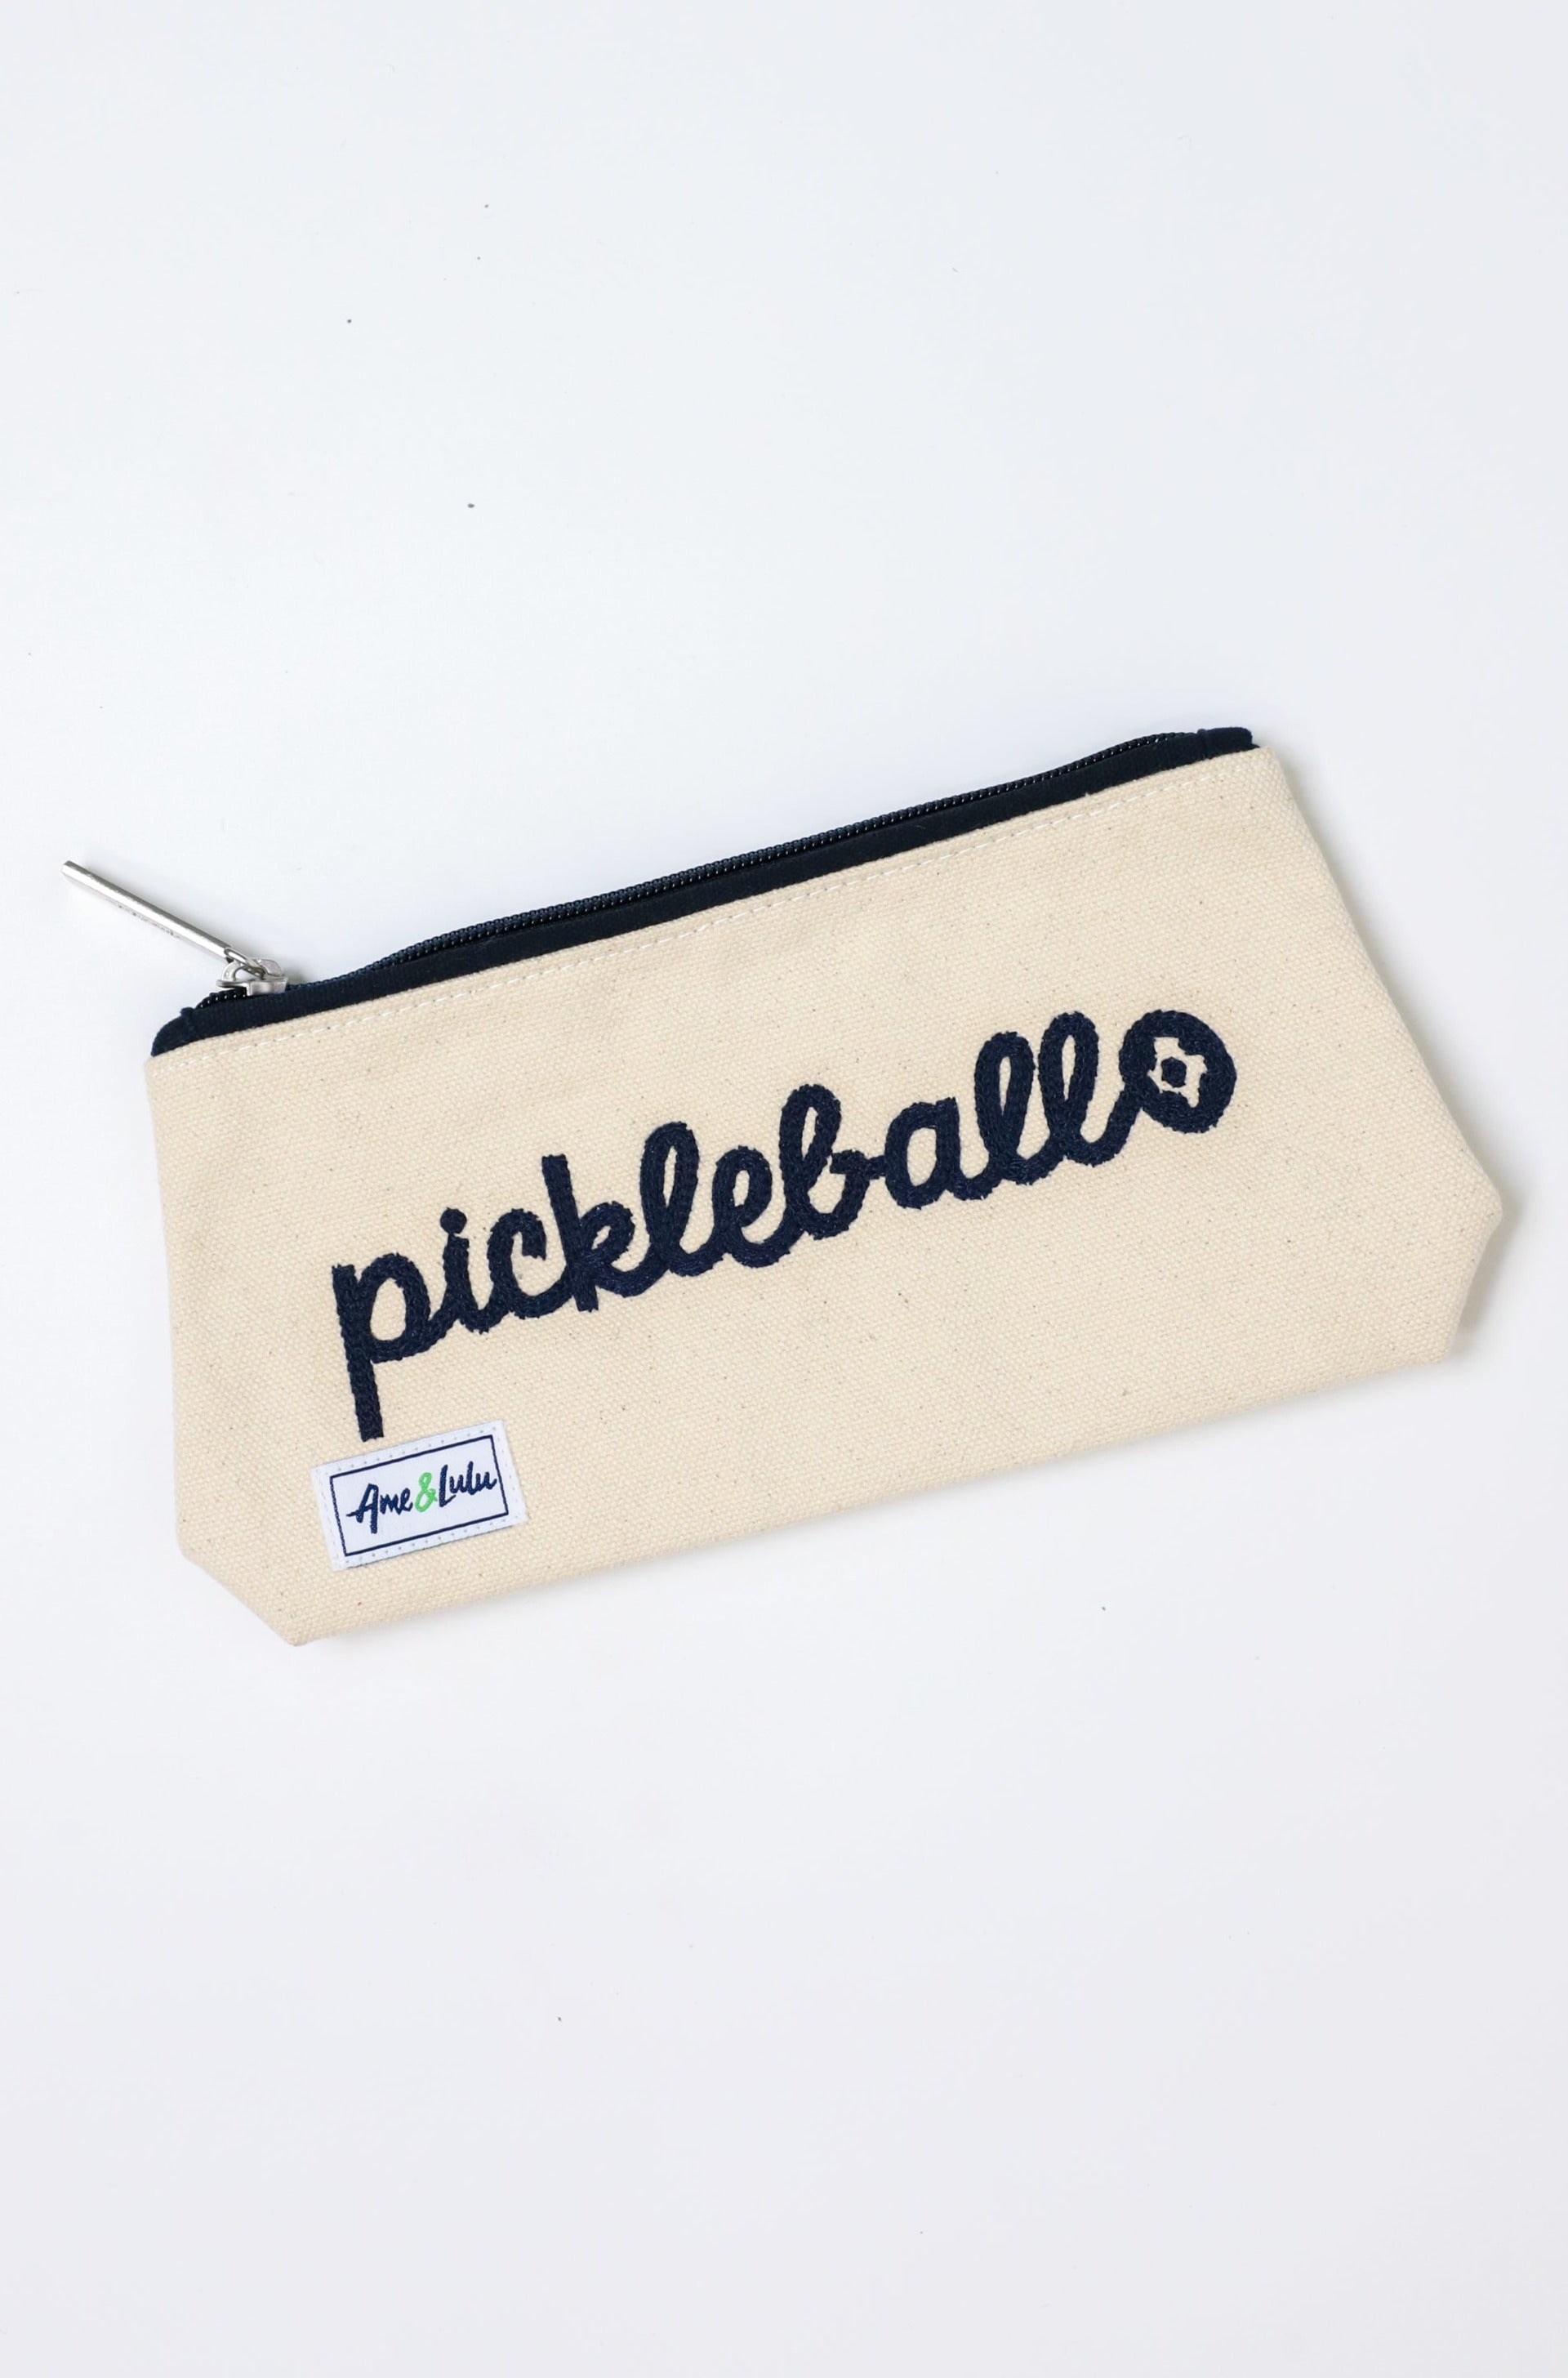 Pickleball Cosmetic Bag